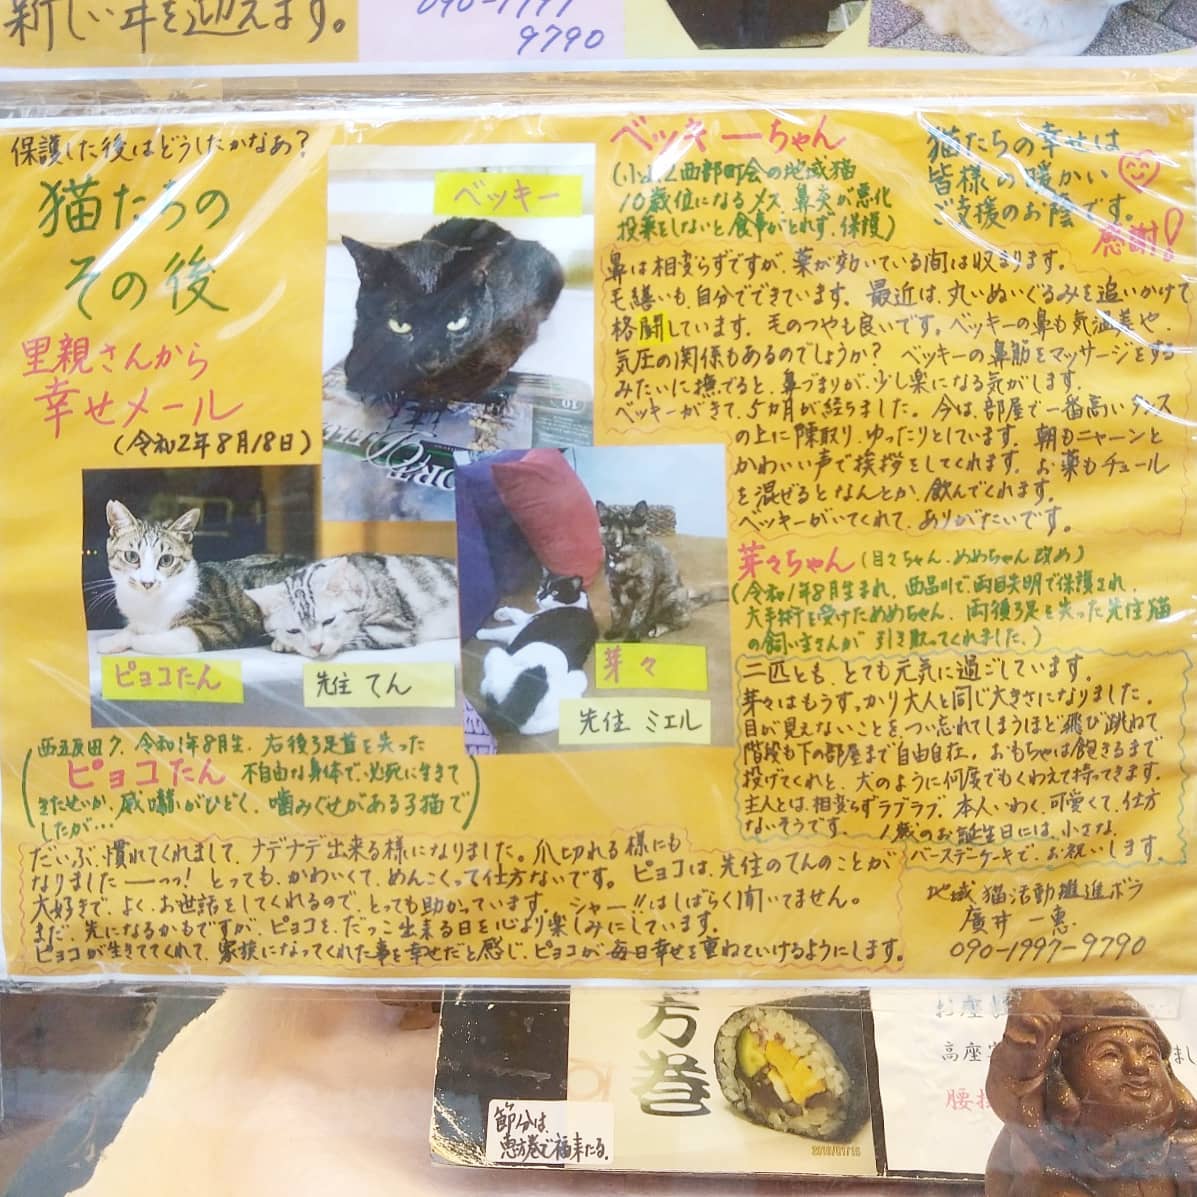 #武蔵小山情報#すし割烹巴店頭のメニューの所に 里親募集やら保護猫情報を掲載して猫愛が溢れるお寿司屋さんだね。K-1ジム近くにある寿司屋さんでわりとヘビロテで保護猫情報更新してるので前を歩いた時にでも猫チェックしてみたら面白いかもね。#捨て猫 #保護猫 #猫 #猫のいる暮らし #猫好き #猫好きさんと繋がりたい #猫との暮らし #猫部 #猫のいる生活 #猫スタグラム #猫好きな人と繋がりたい #武蔵小山 #武蔵小山グルメ情報 #武蔵小山商店街